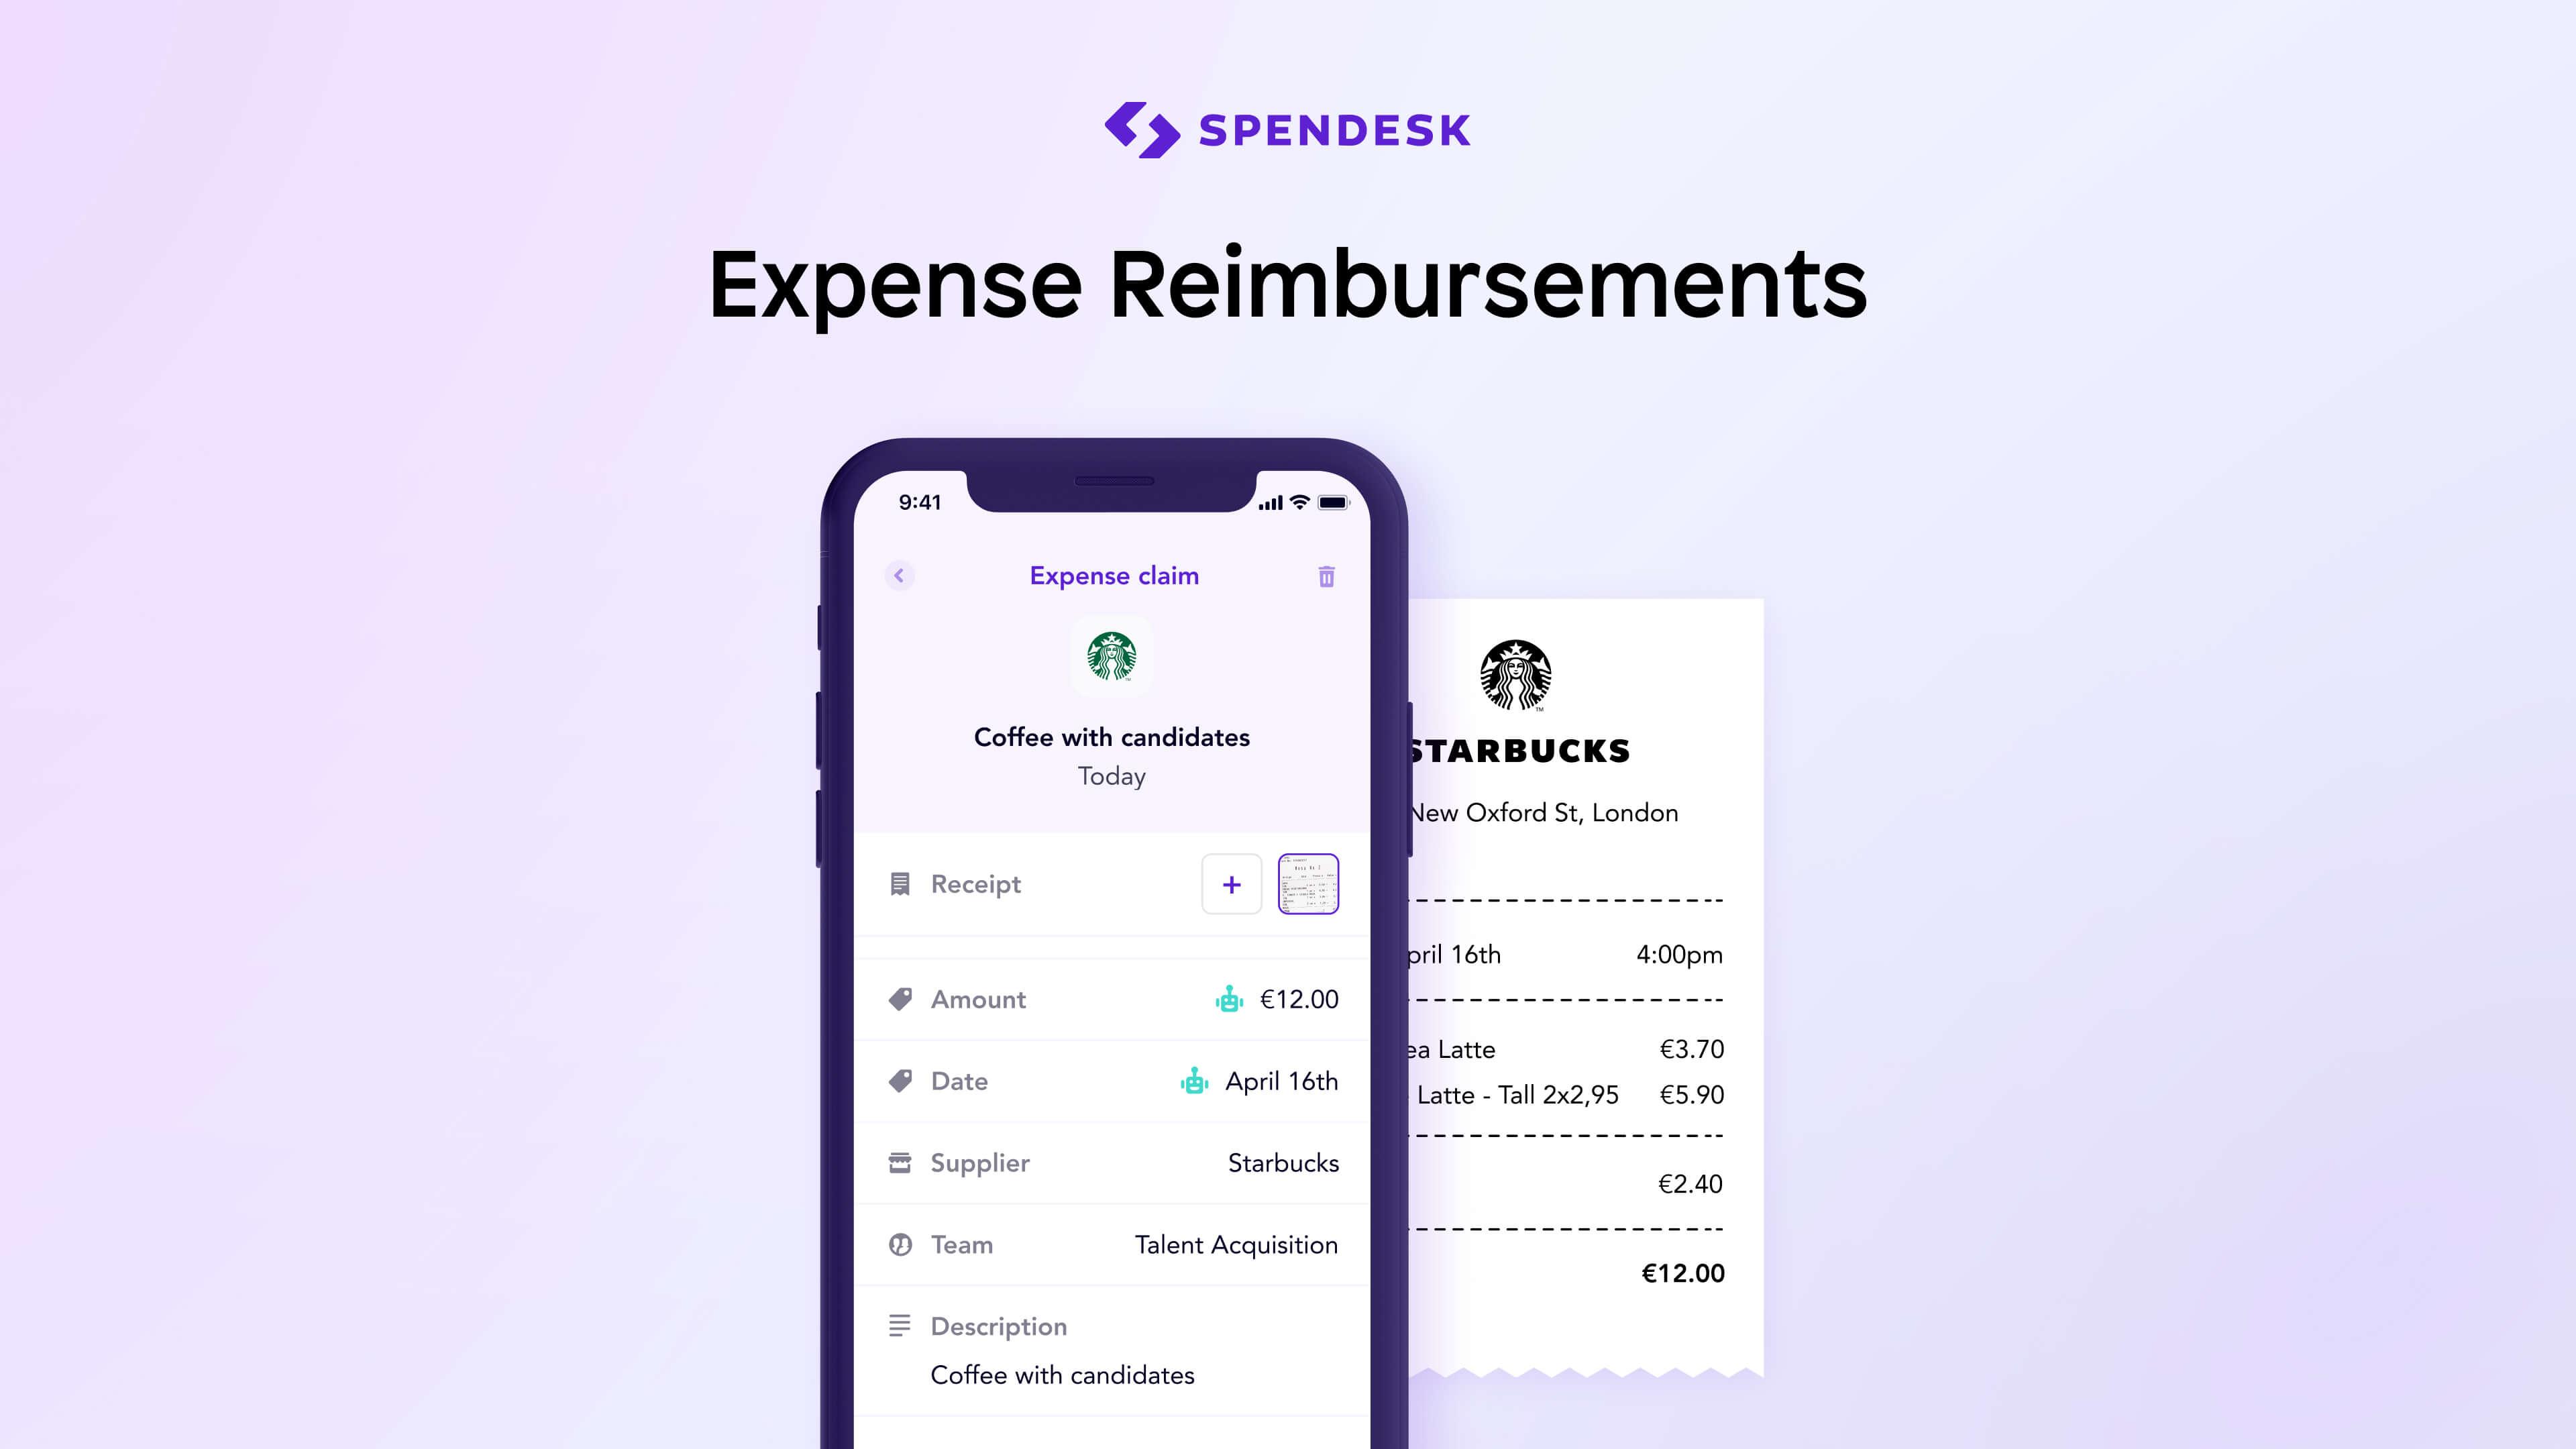 Spendesk - Make expense reimbursements right from Spendesk